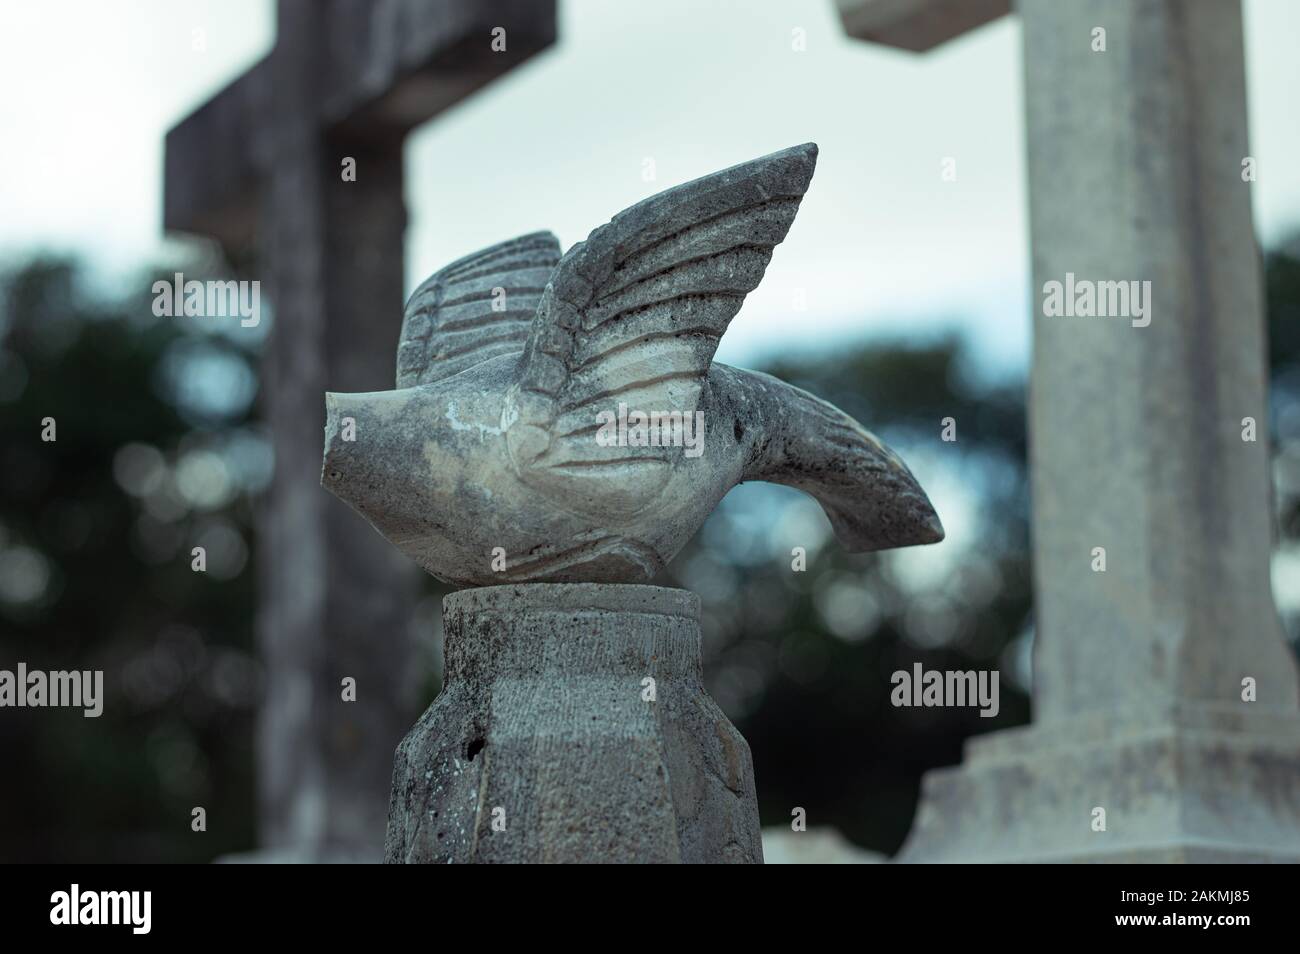 Colomba di pietra senza testa al cimitero cattolico. Colomba che simboleggia lo Spirito Santo. Foto Stock